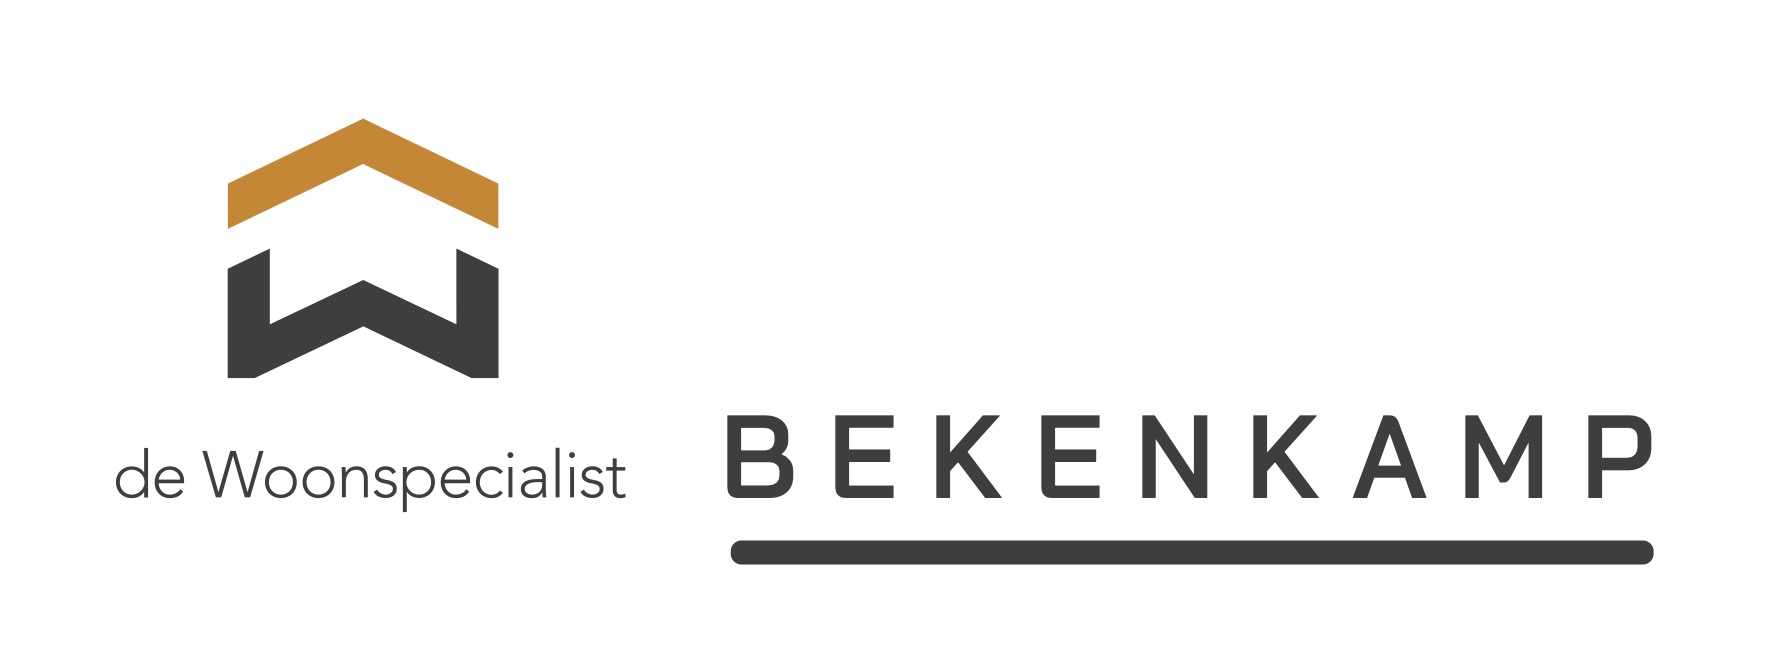 Logo Bekenkamp de Woonspecialist